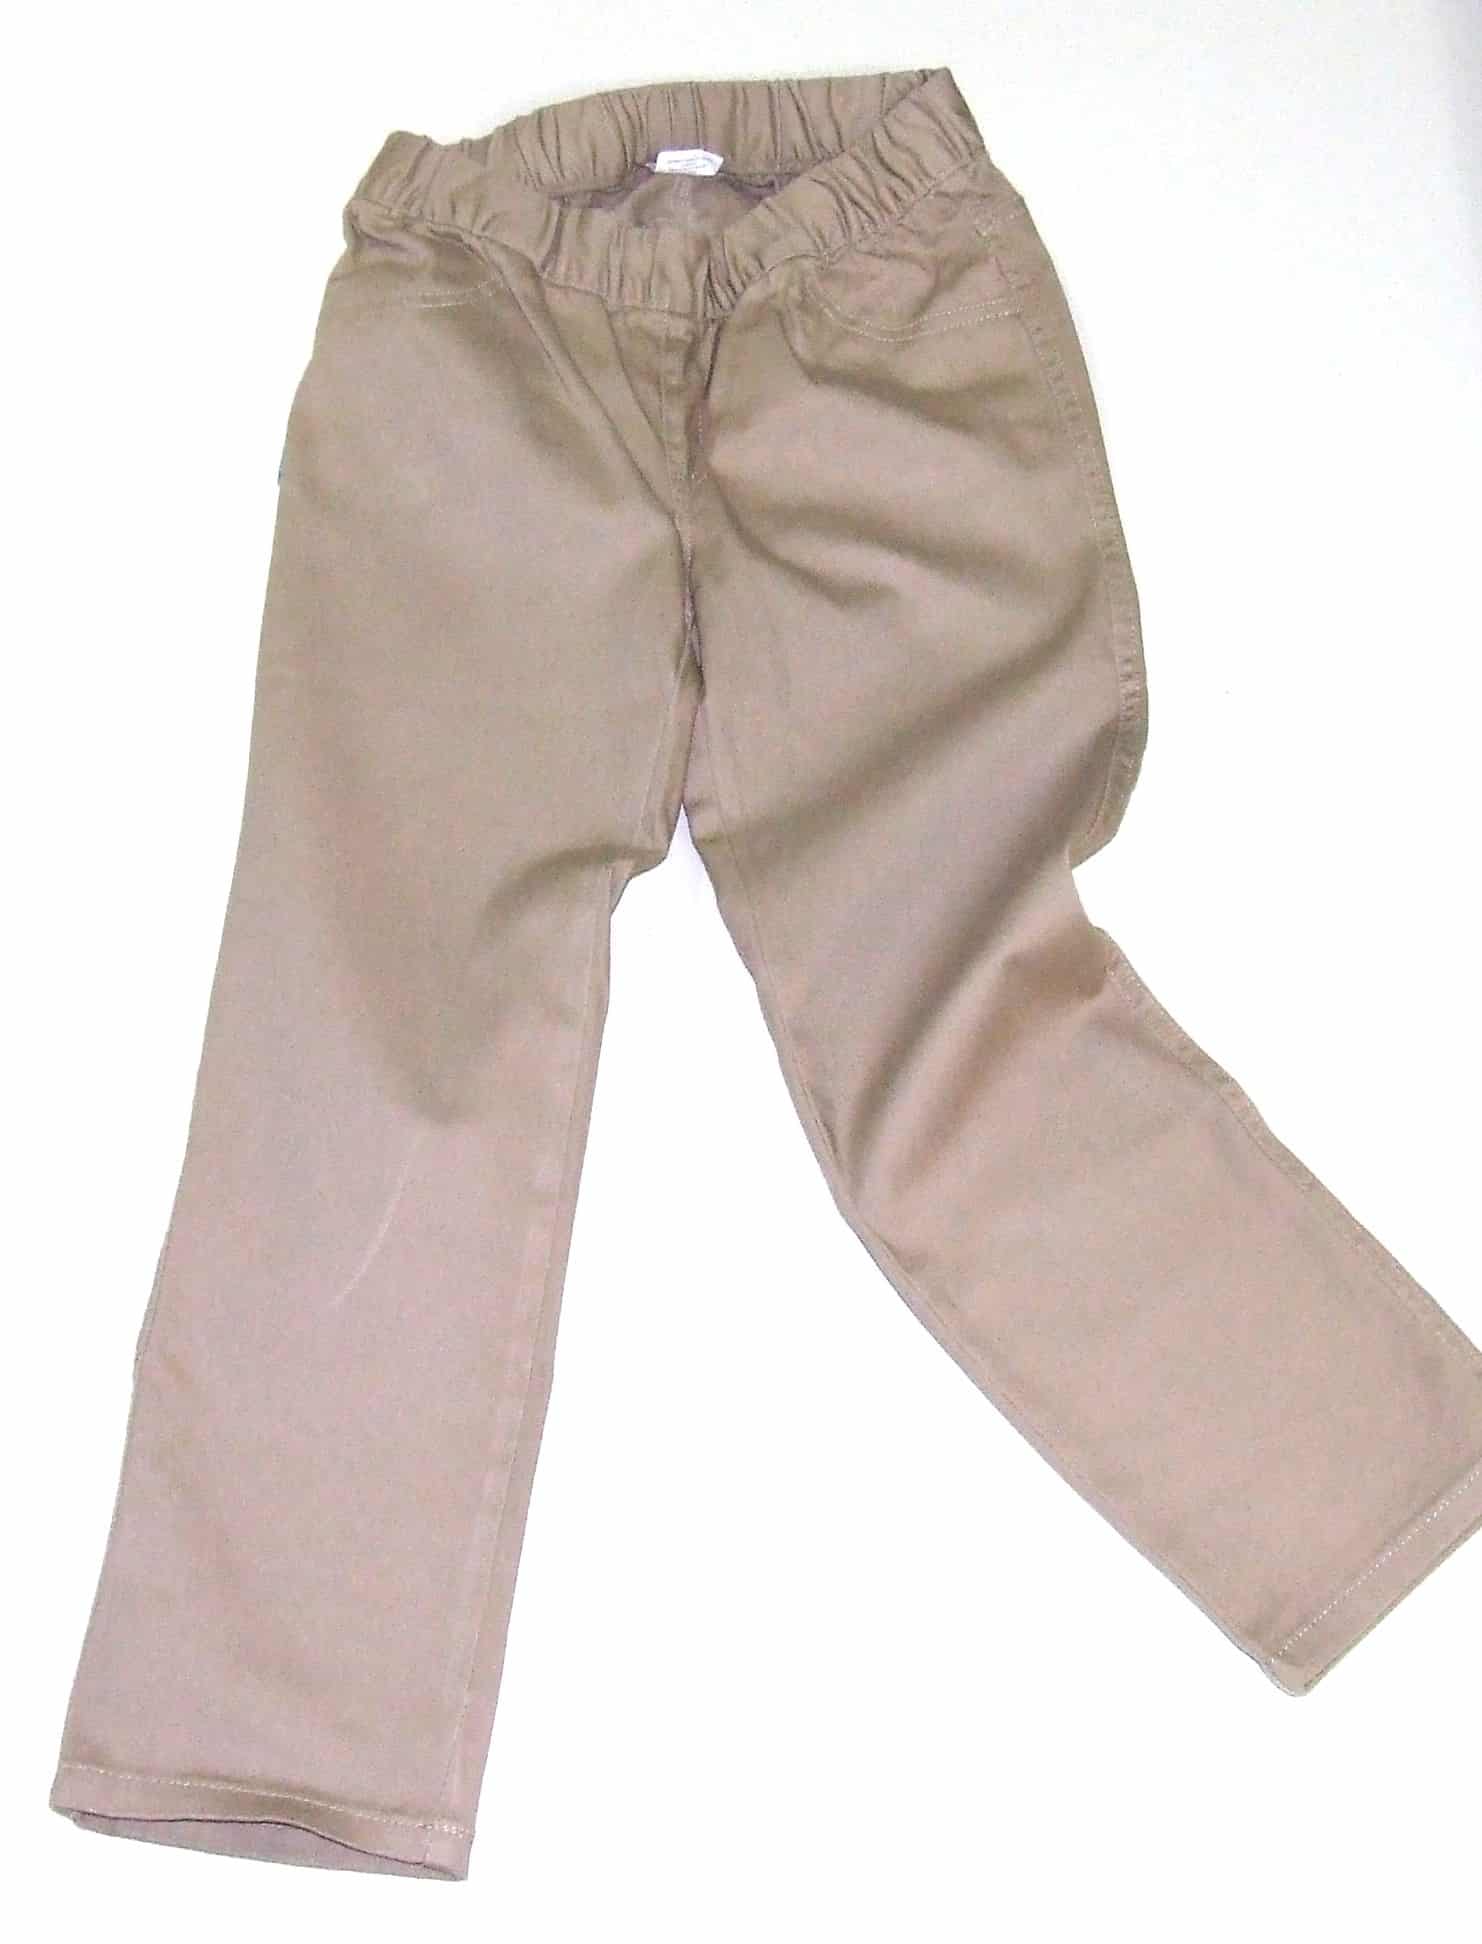 Custom basic pants